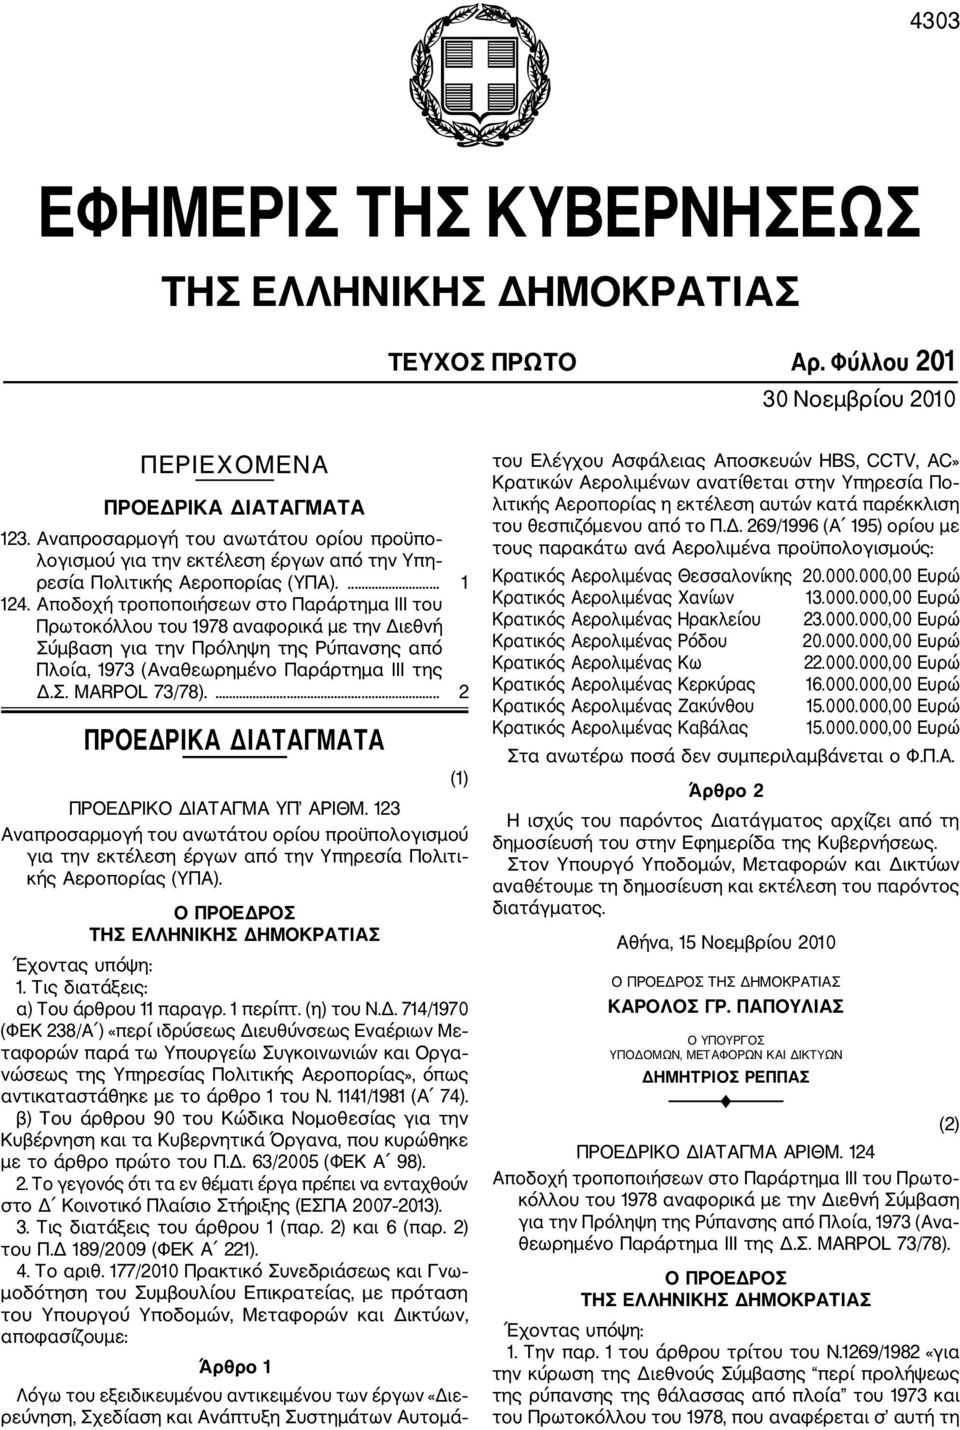 Αποδοχή τροποποιήσεων στο Παράρτημα III του Πρωτοκόλλου του 1978 αναφορικά με την Διε θνή Σύμβαση για την Πρόληψη της Ρύπανσης από Πλοία, 1973 (Αναθεωρημένο Παράρτημα ΙΙΙ της Δ.Σ. MARPOL 73/78).